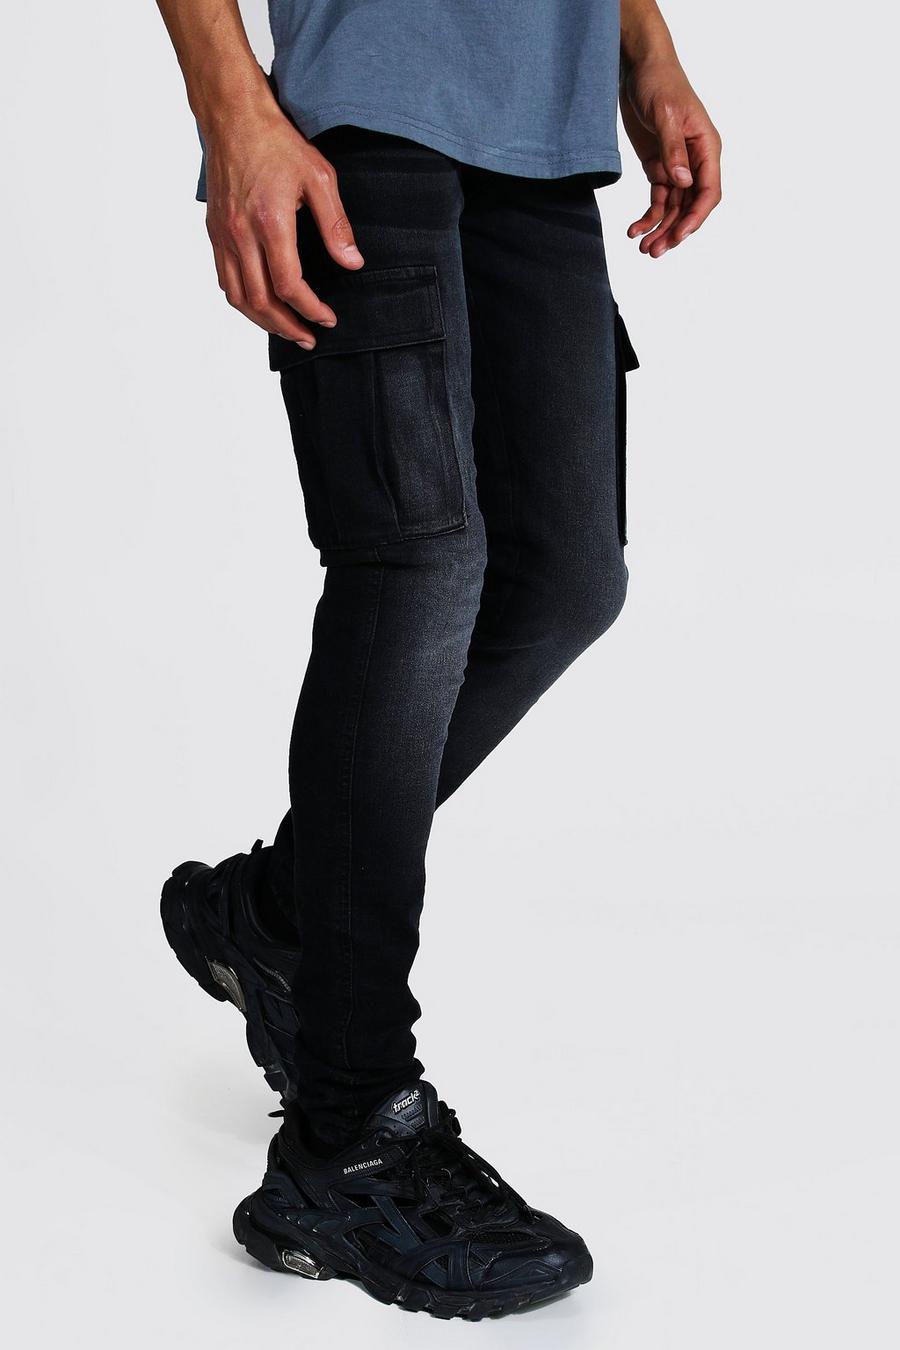 שחור סקיני ג'ינס דגמ"ח לגברים גבוהים image number 1